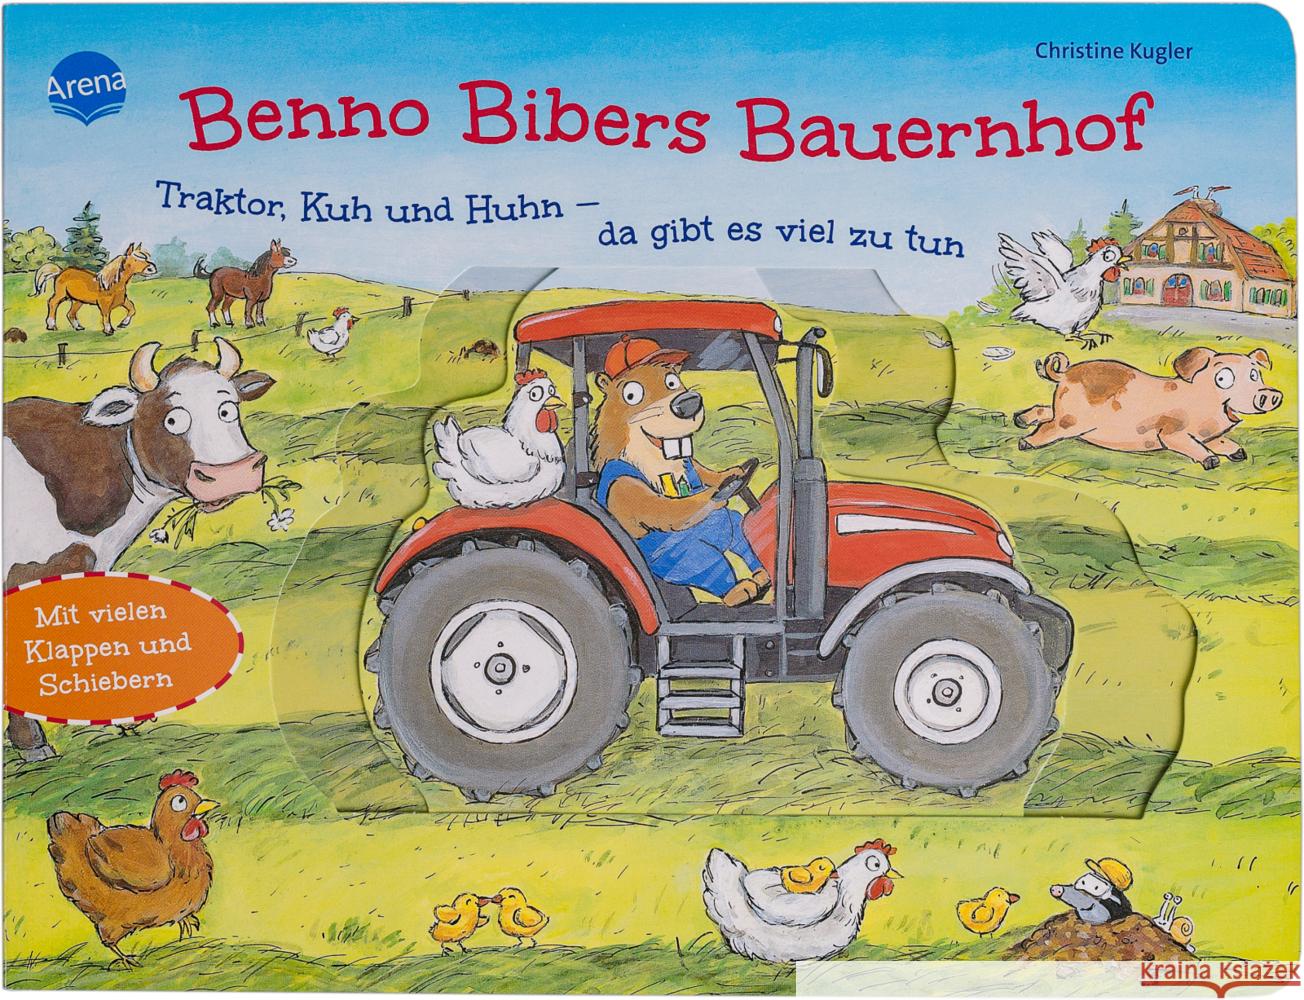 Benno Bibers Bauernhof. Traktor, Kuh und Huhn - da gibt es viel zu tun Kugler, Christine 9783401718521